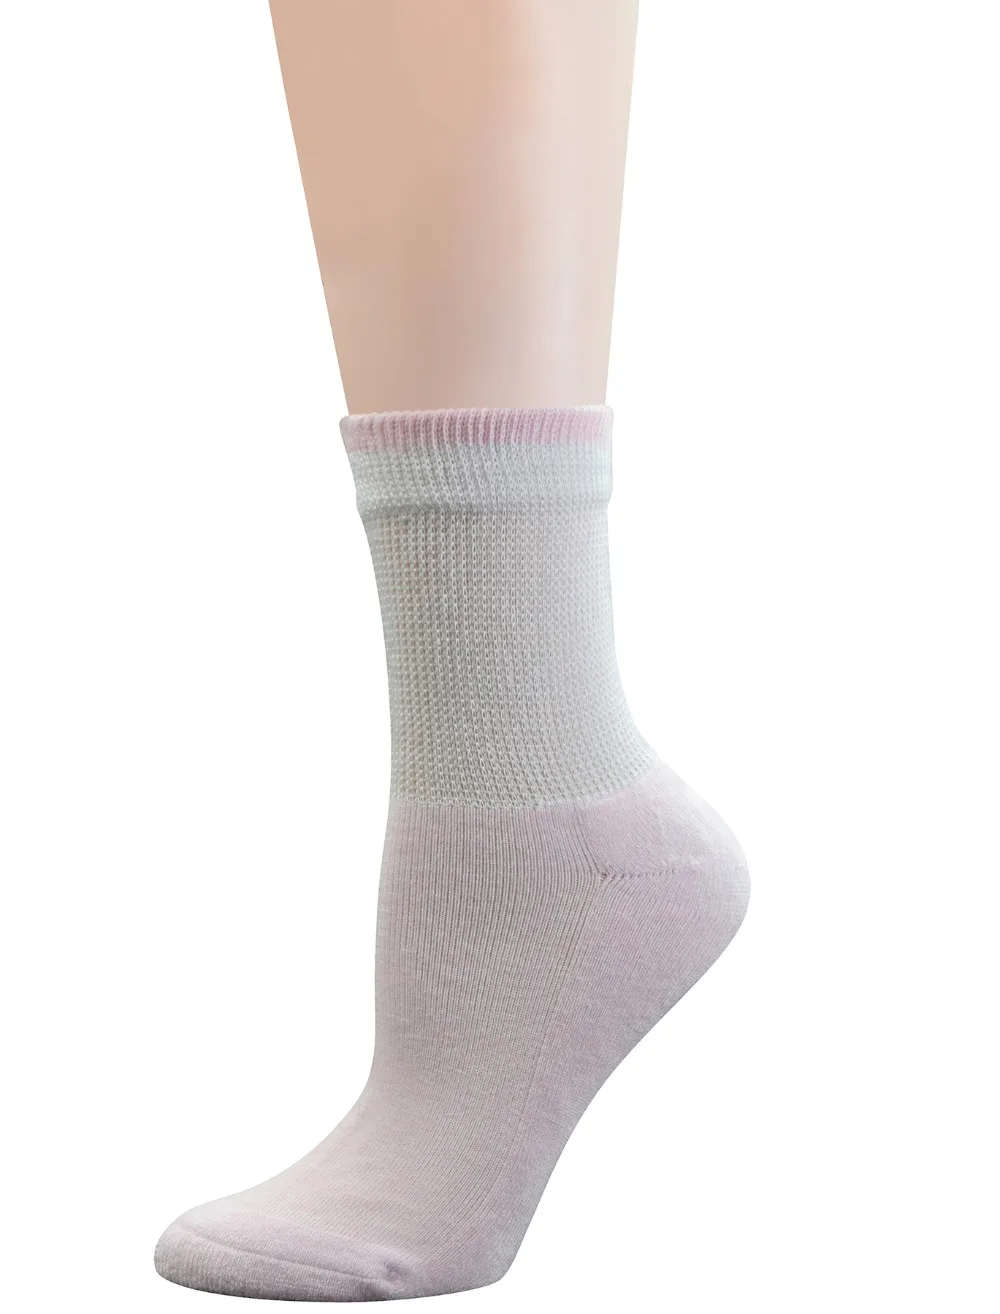 6 пар женских бамбуковых носков для диабетиков с не связывающим верхом и подушкой, размер L(размер носков: 9-11